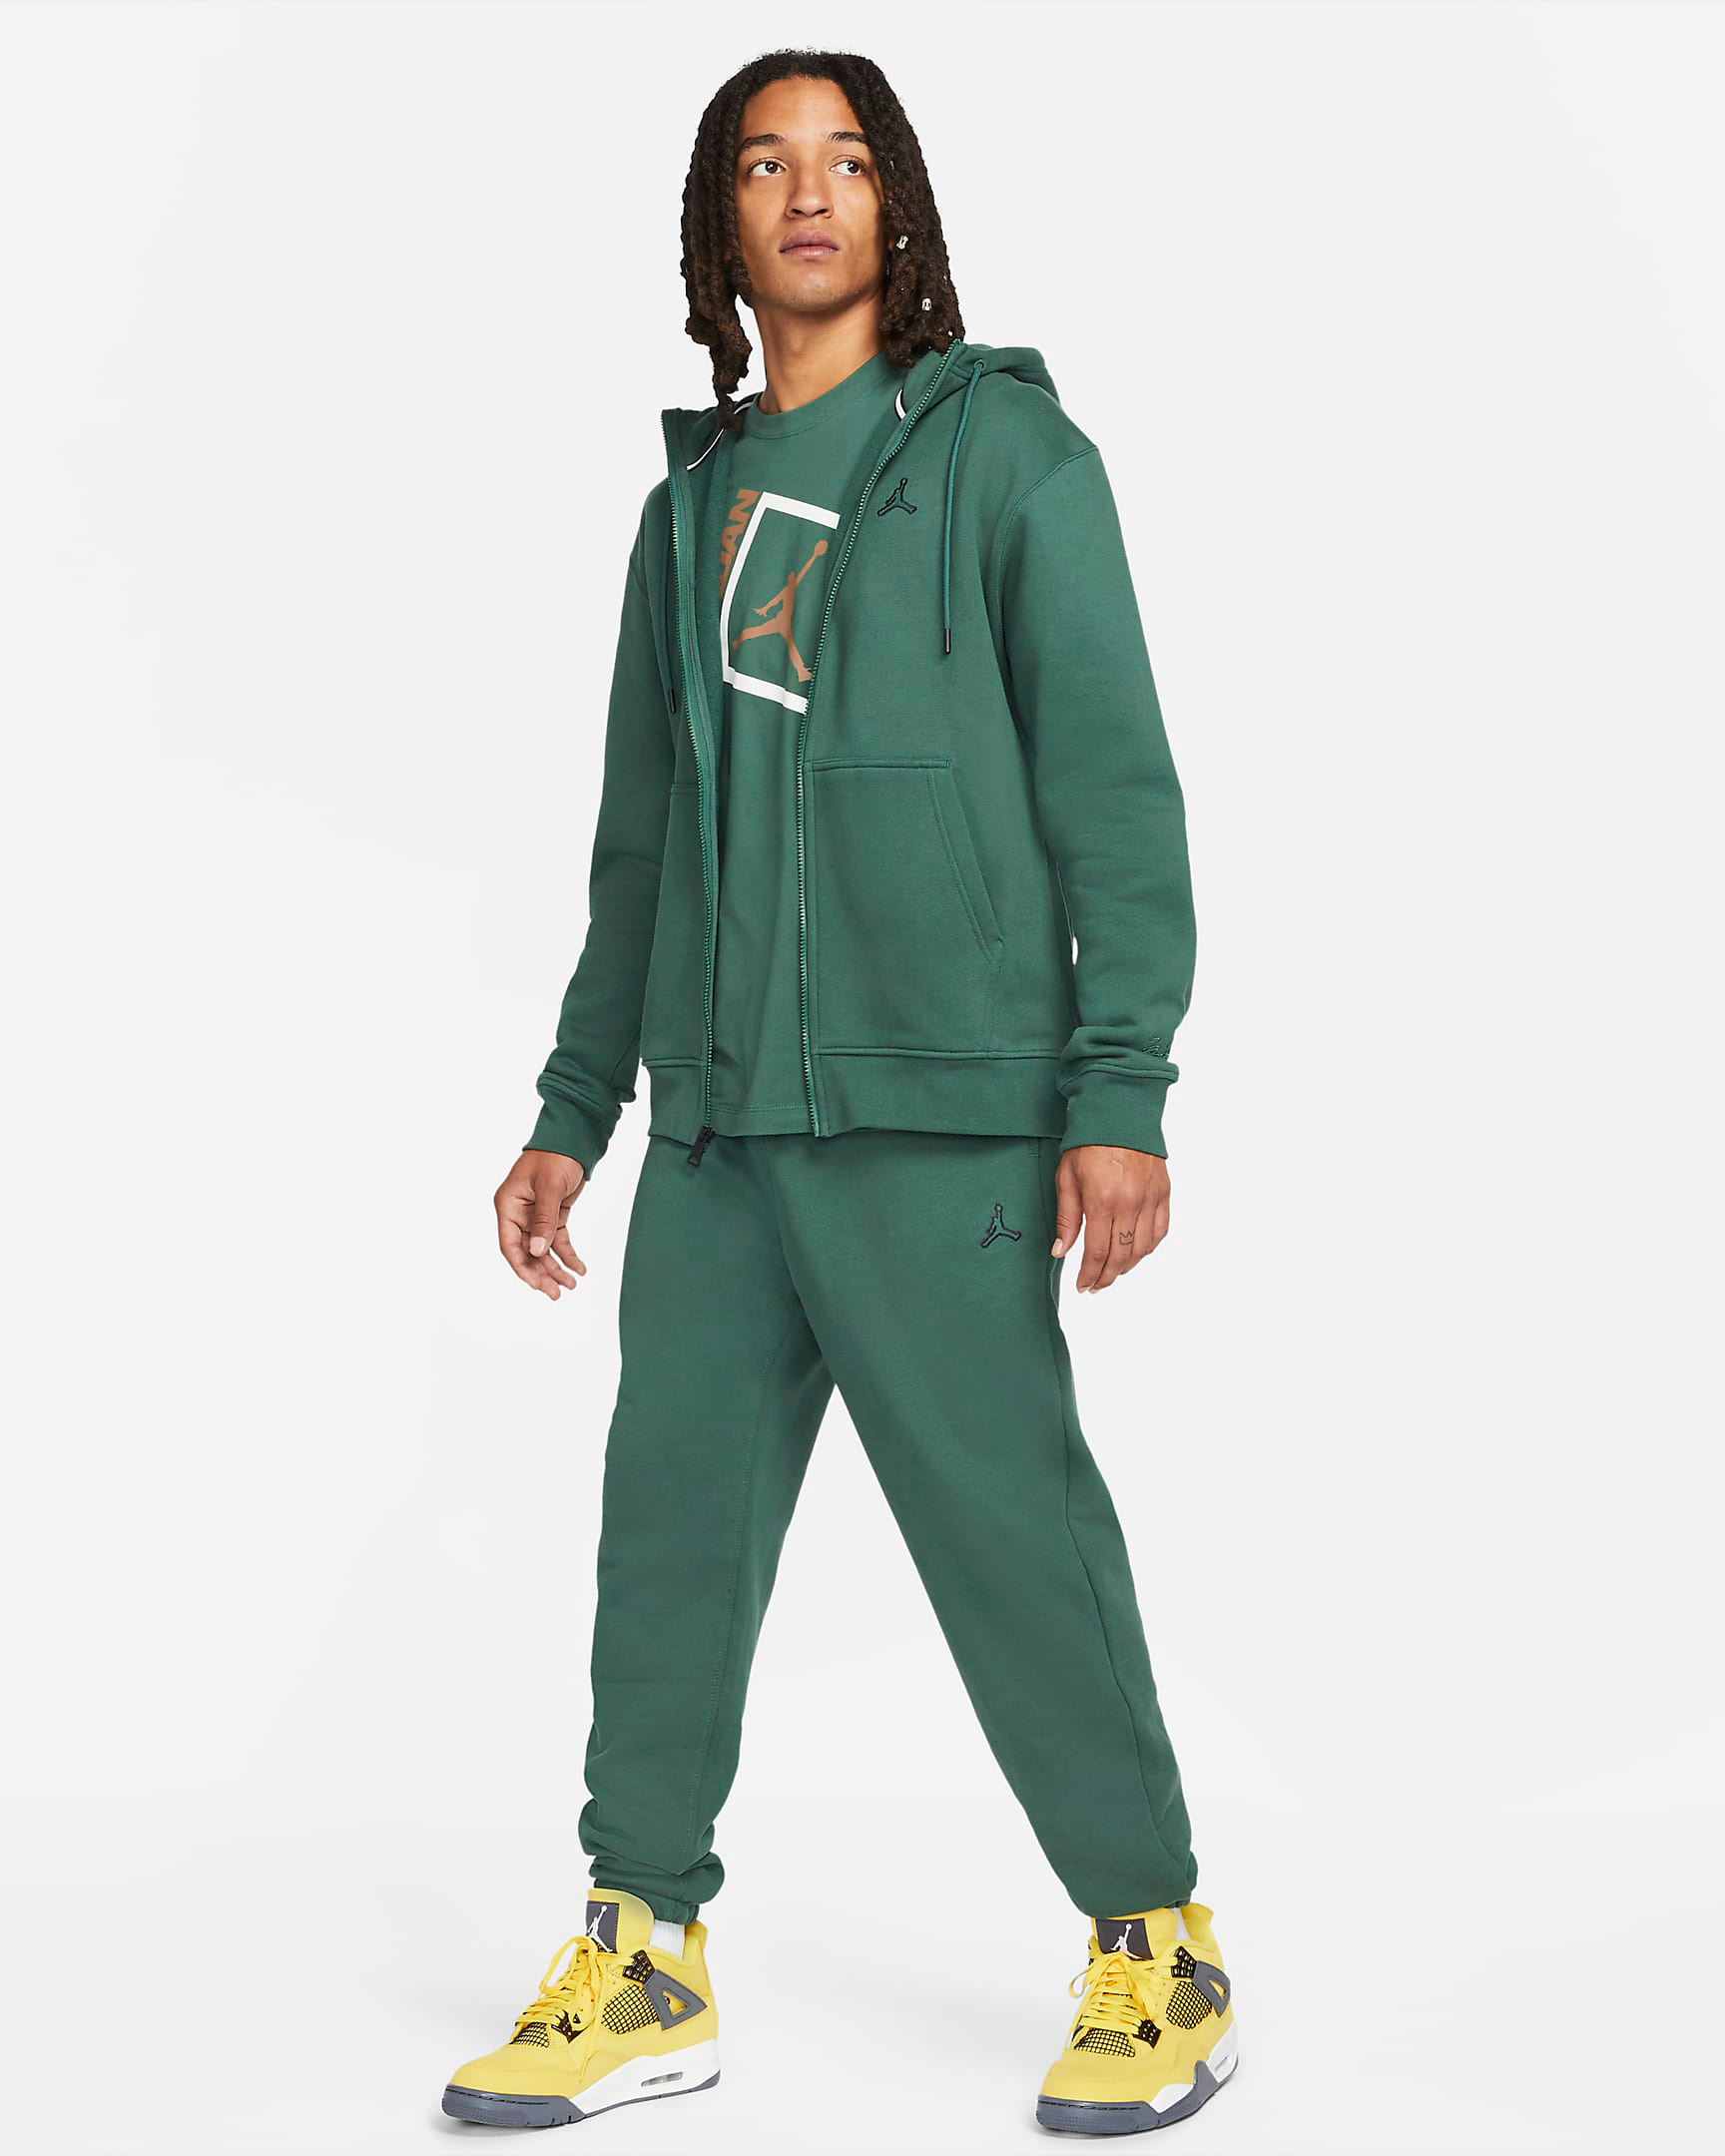 jordan-noble-green-statement-hoodie-pants-outfit